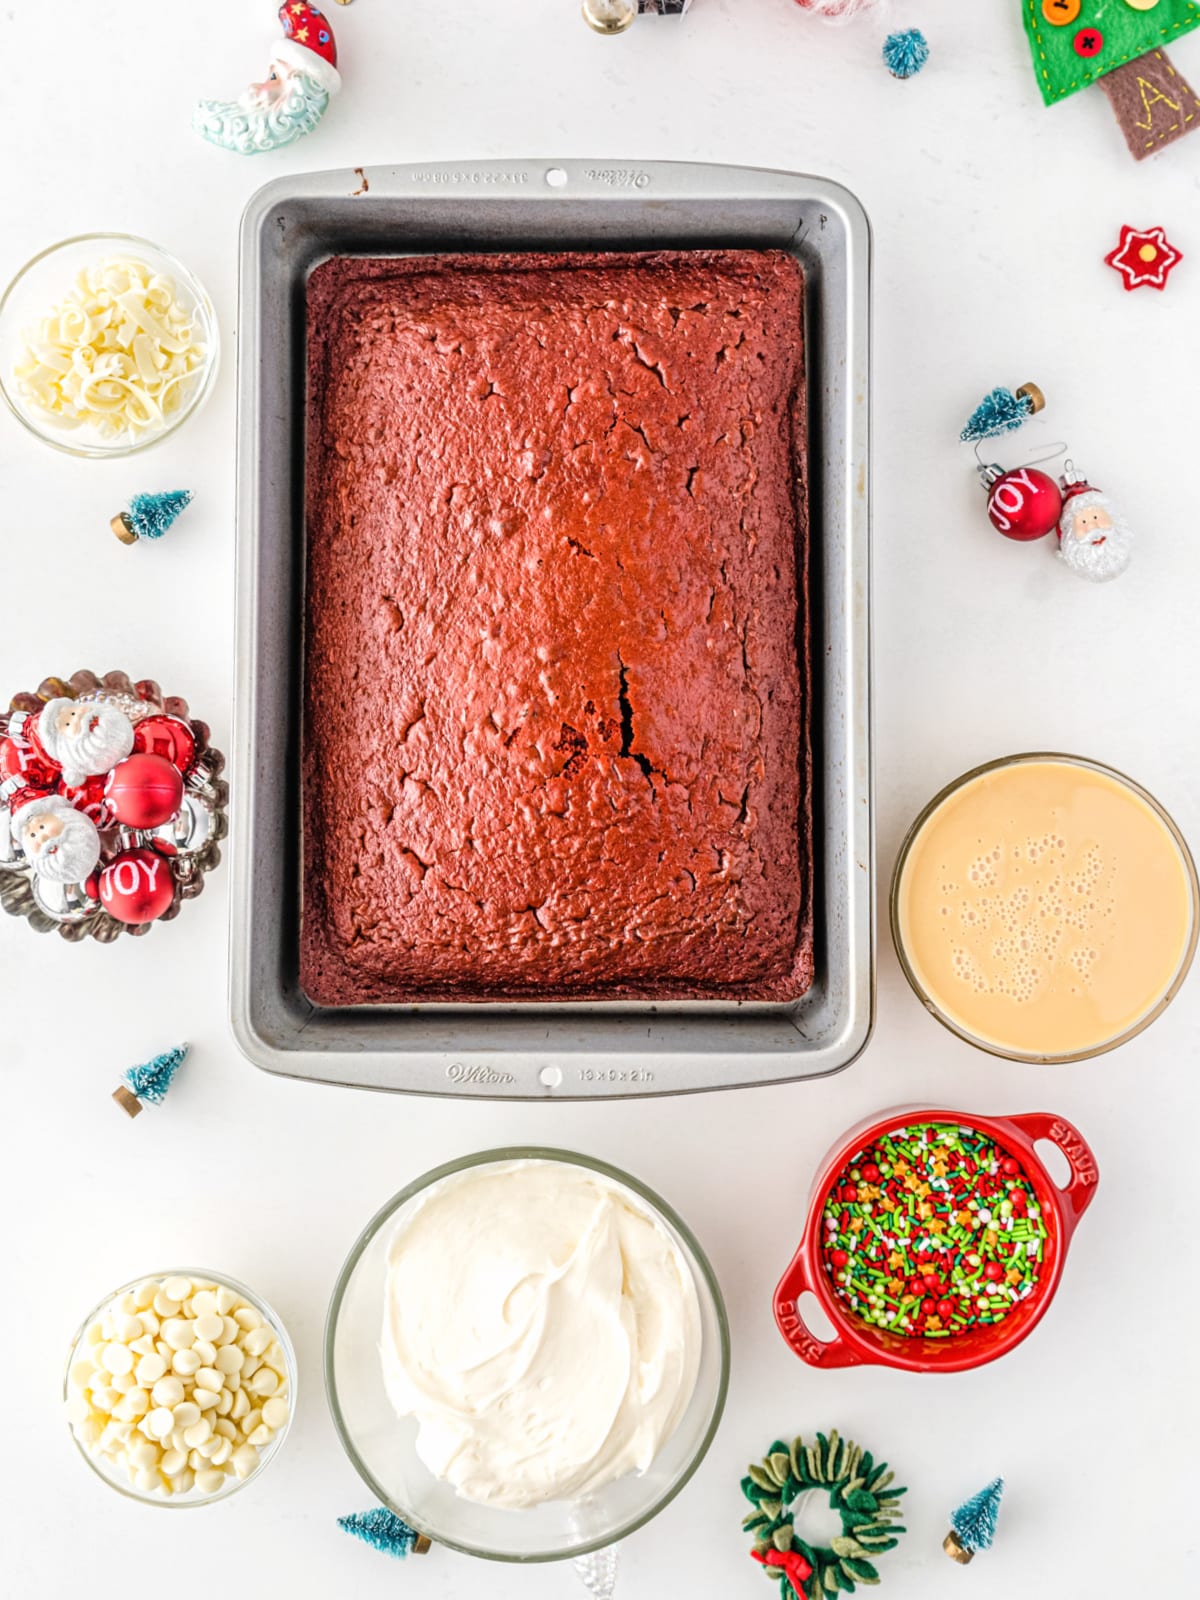 Red Velvet Poke Cake ingredients